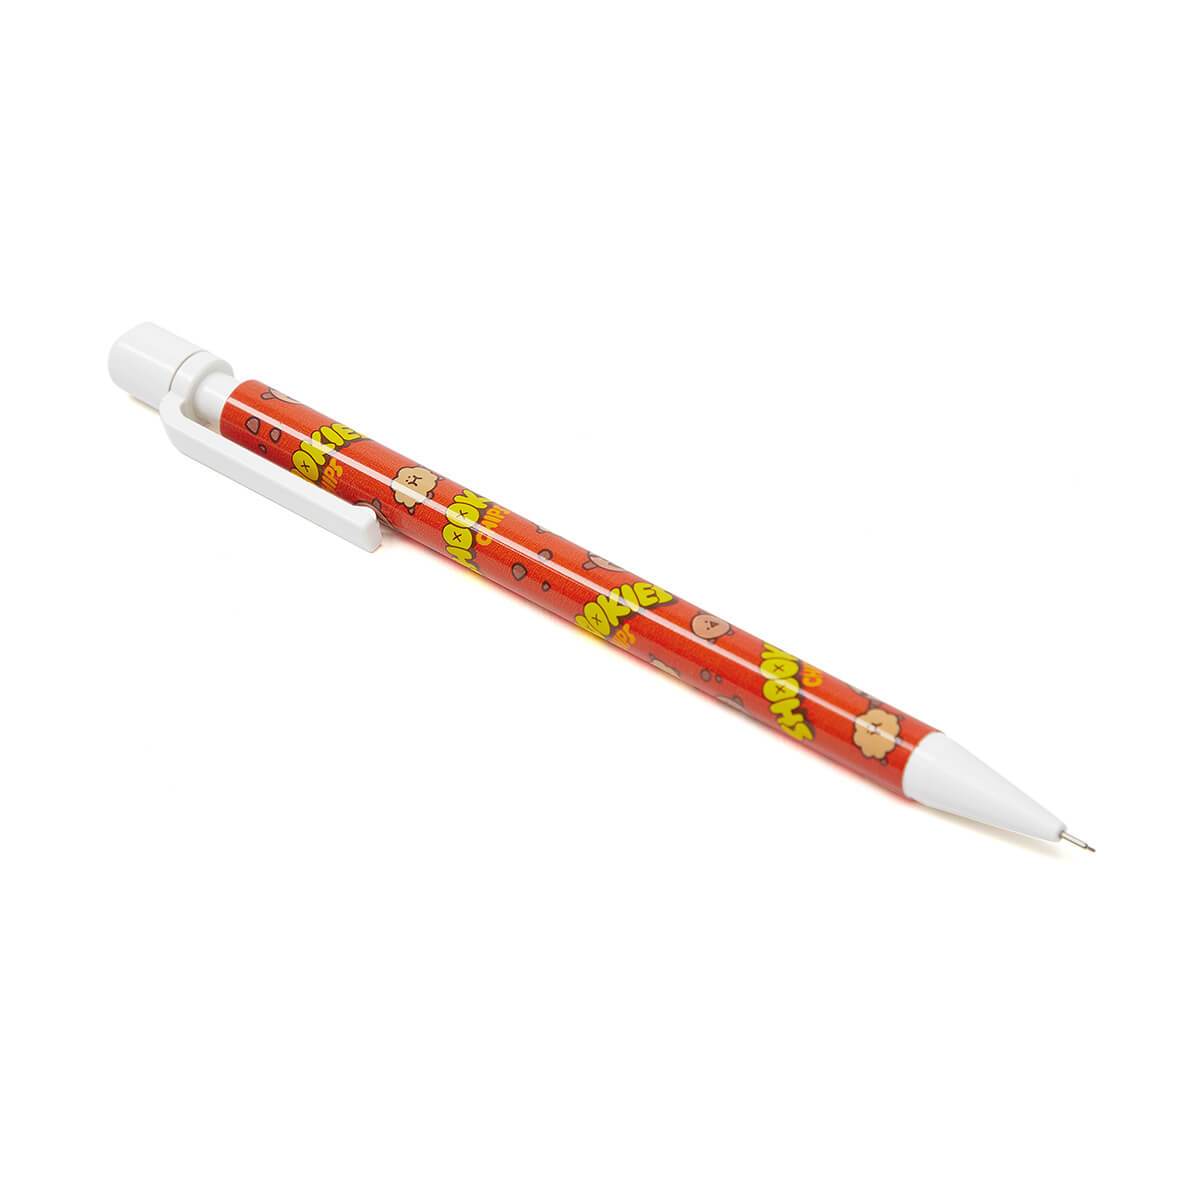 BT21 SHOOKY Sweet Mechanical Pencil 0.5mm